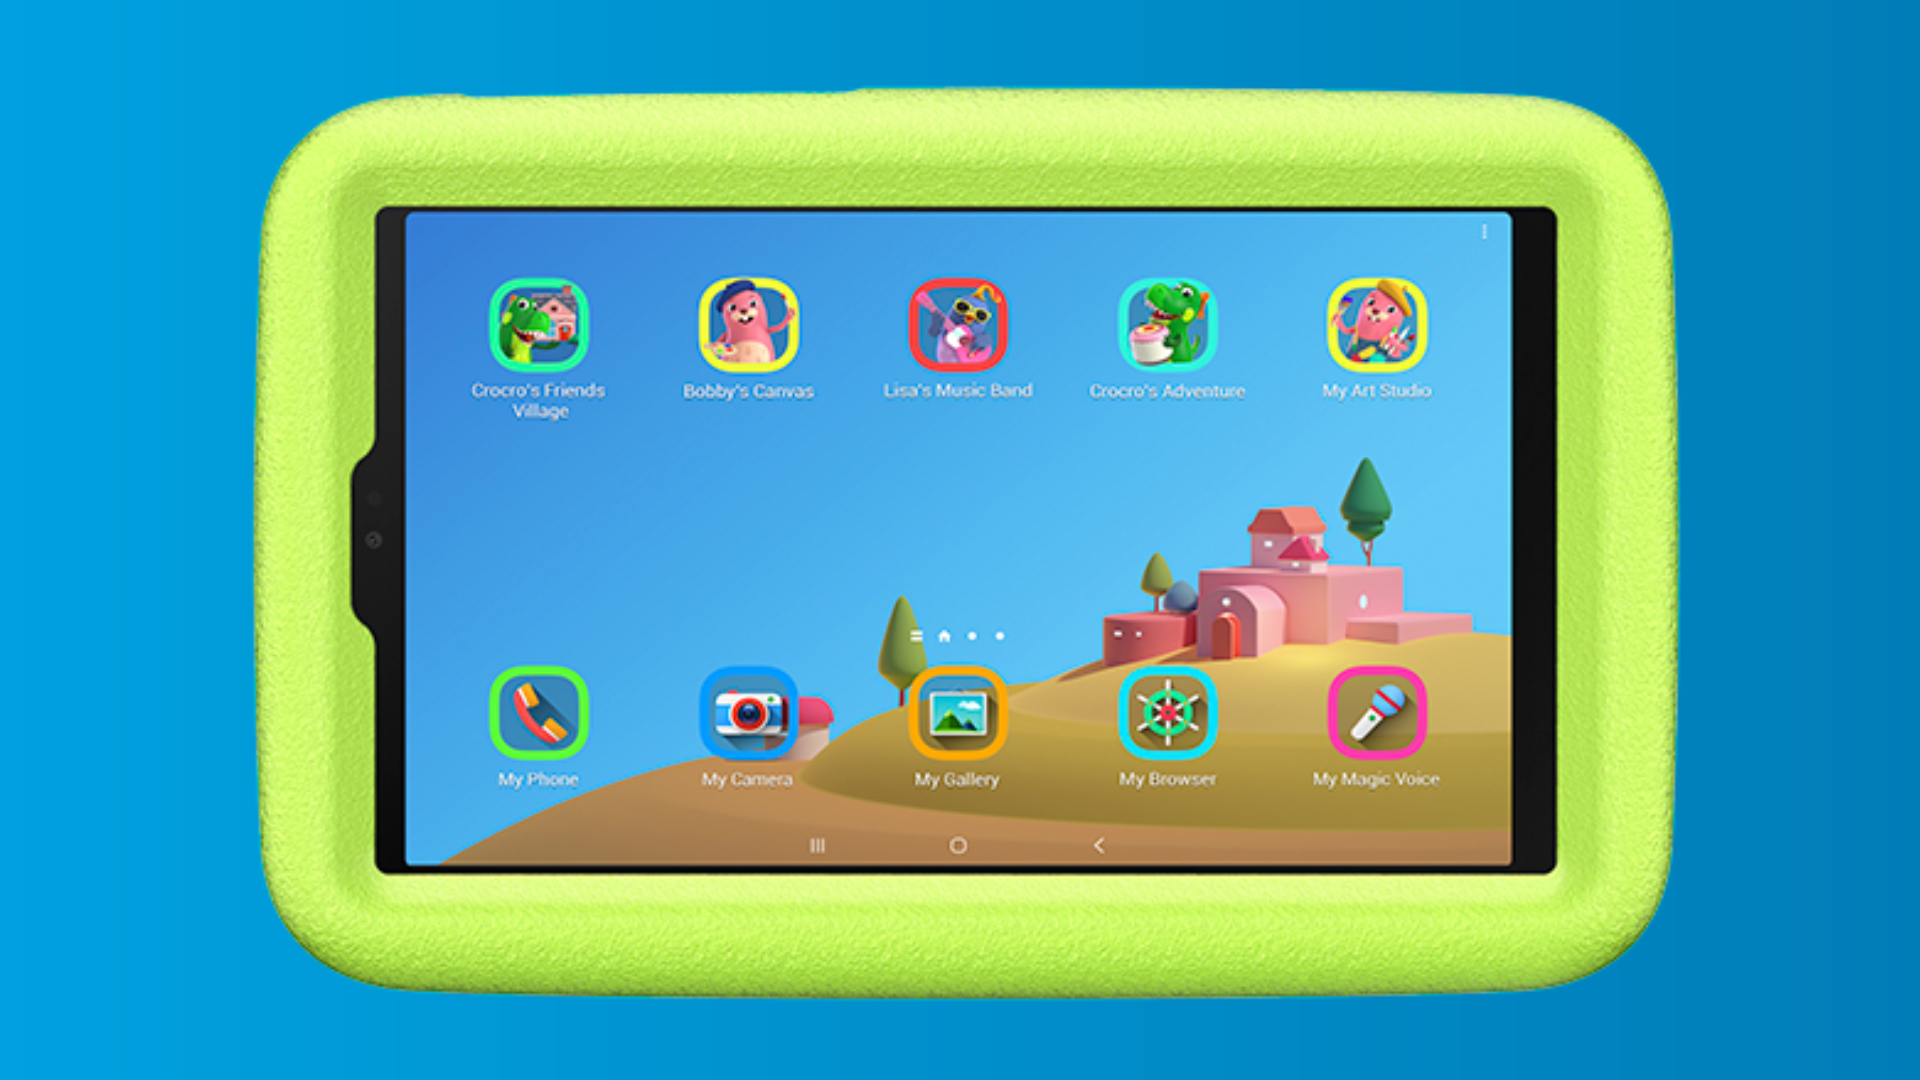 Sản phẩm Samsung Galaxy Tab A7 Lite Kids Edition, được phát hành bởi AT&T và Samsung tại Hoa Kỳ, sẽ là sự lựa chọn hoàn hảo cho các bé yêu thích công nghệ. Với thiết kế chắc chắn và tính năng an toàn thông minh, cha mẹ hẳn sẽ không còn lo lắng khi con em mình sử dụng tablet. Đừng bỏ lỡ cơ hội này!